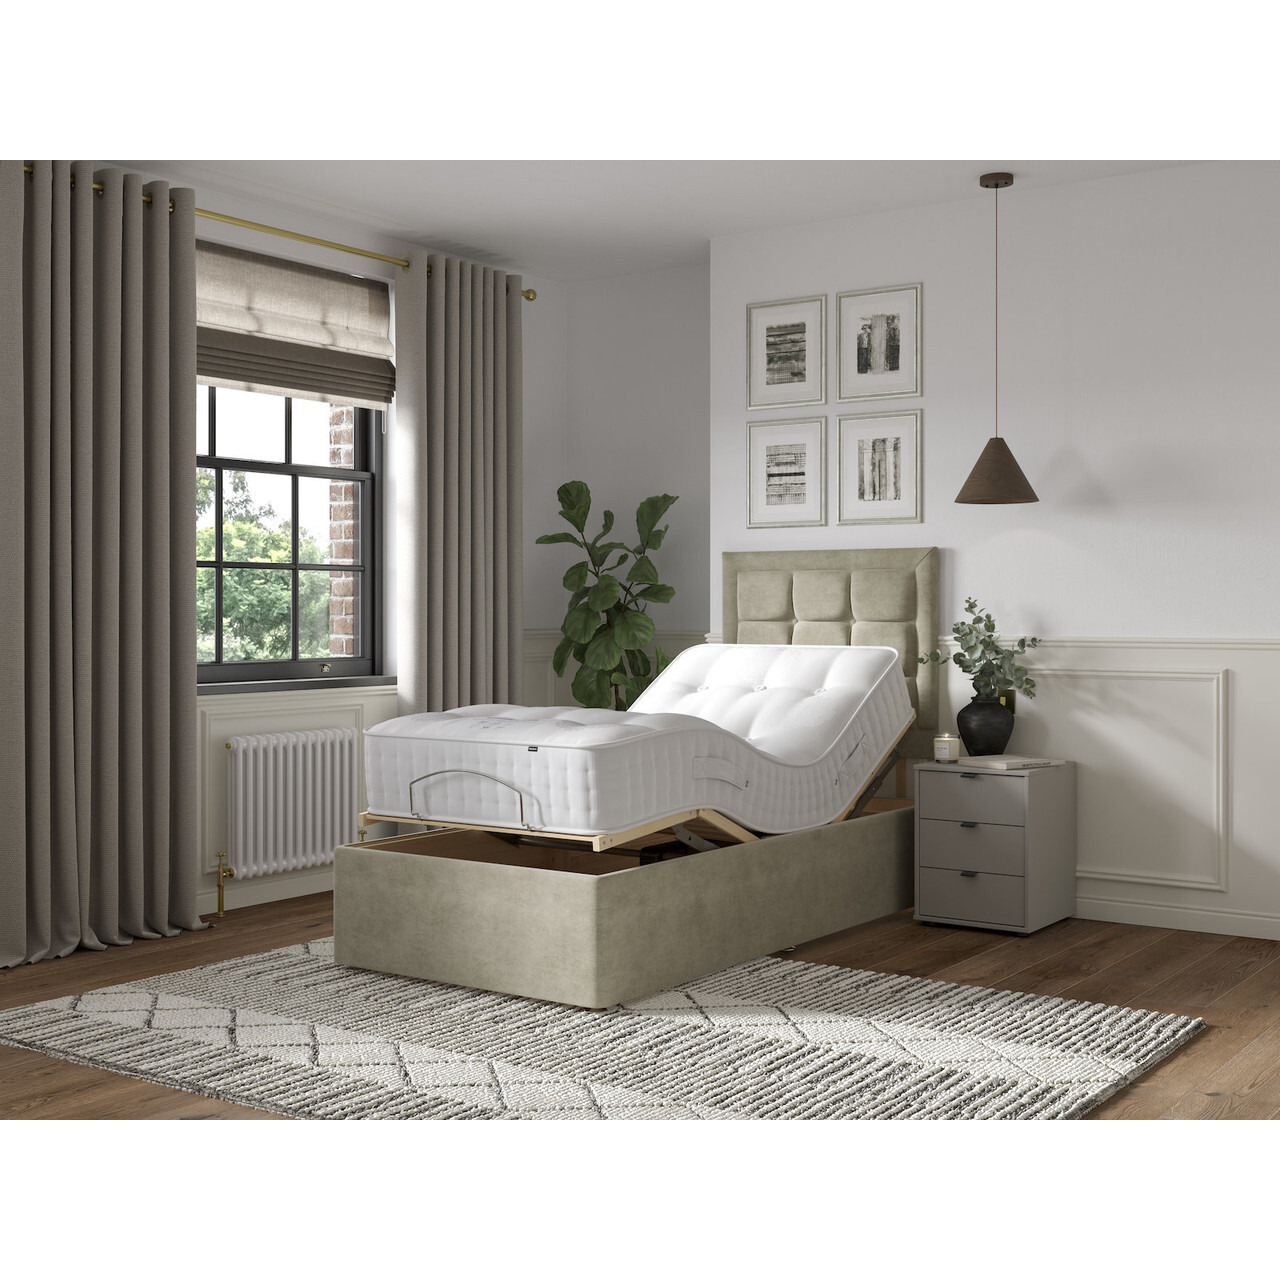 Postureflex 1000 Pocket Natural Divan Bed Set - image 1